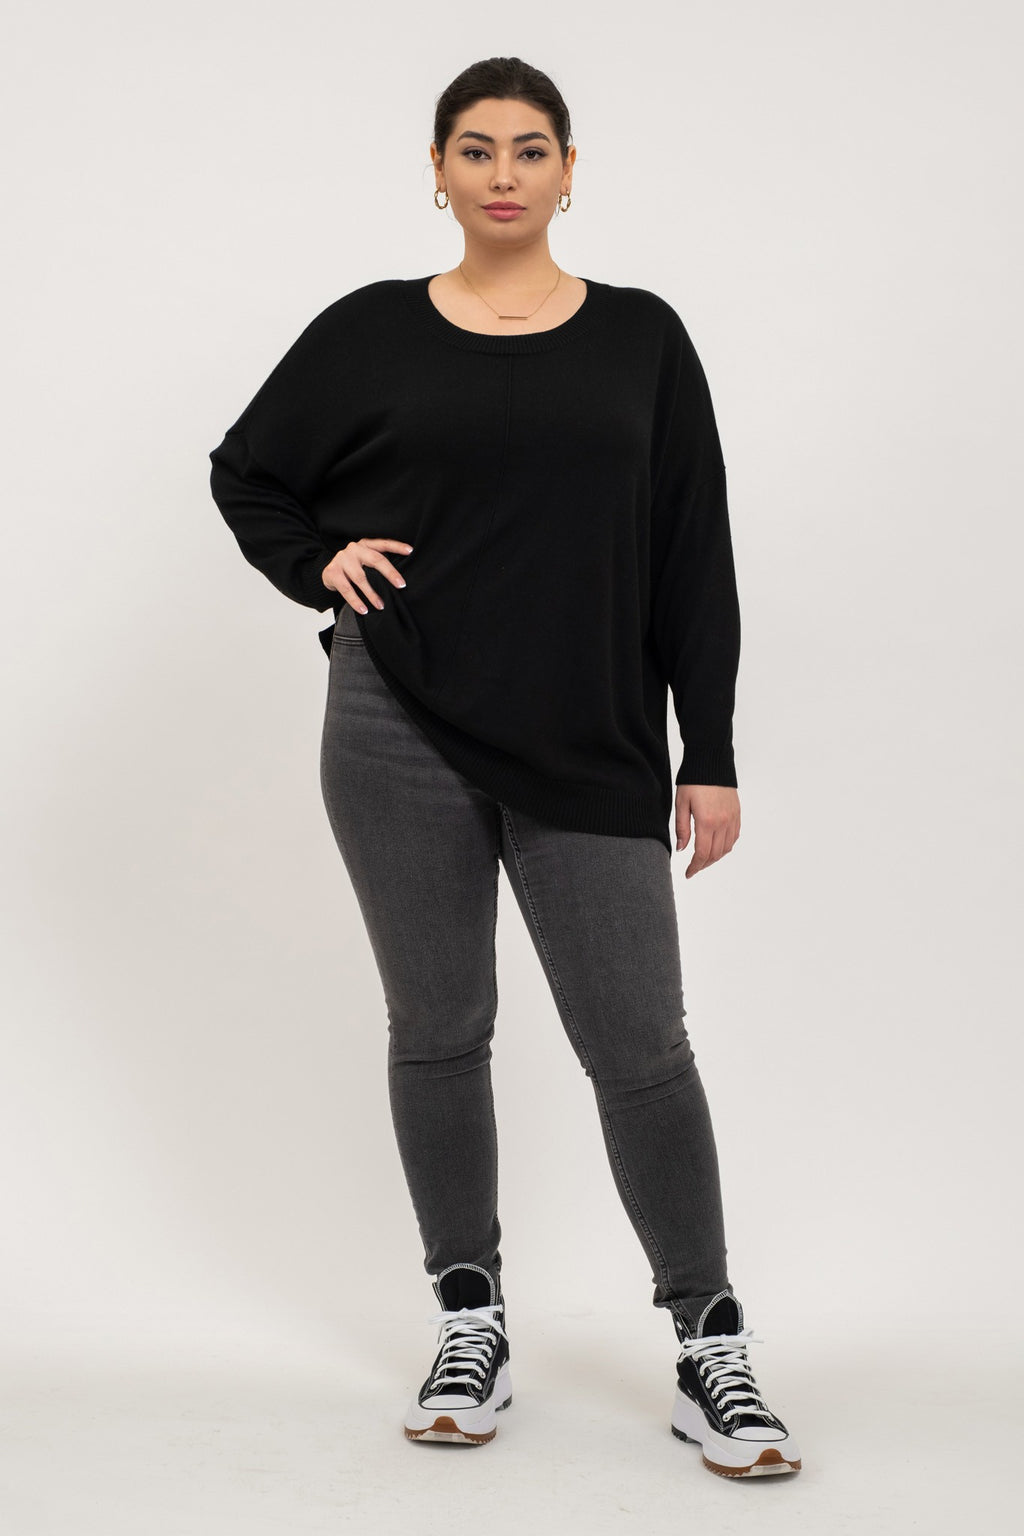 Drop Shoulder Round Neck Lightweight Sweater (Plus Size - Black)